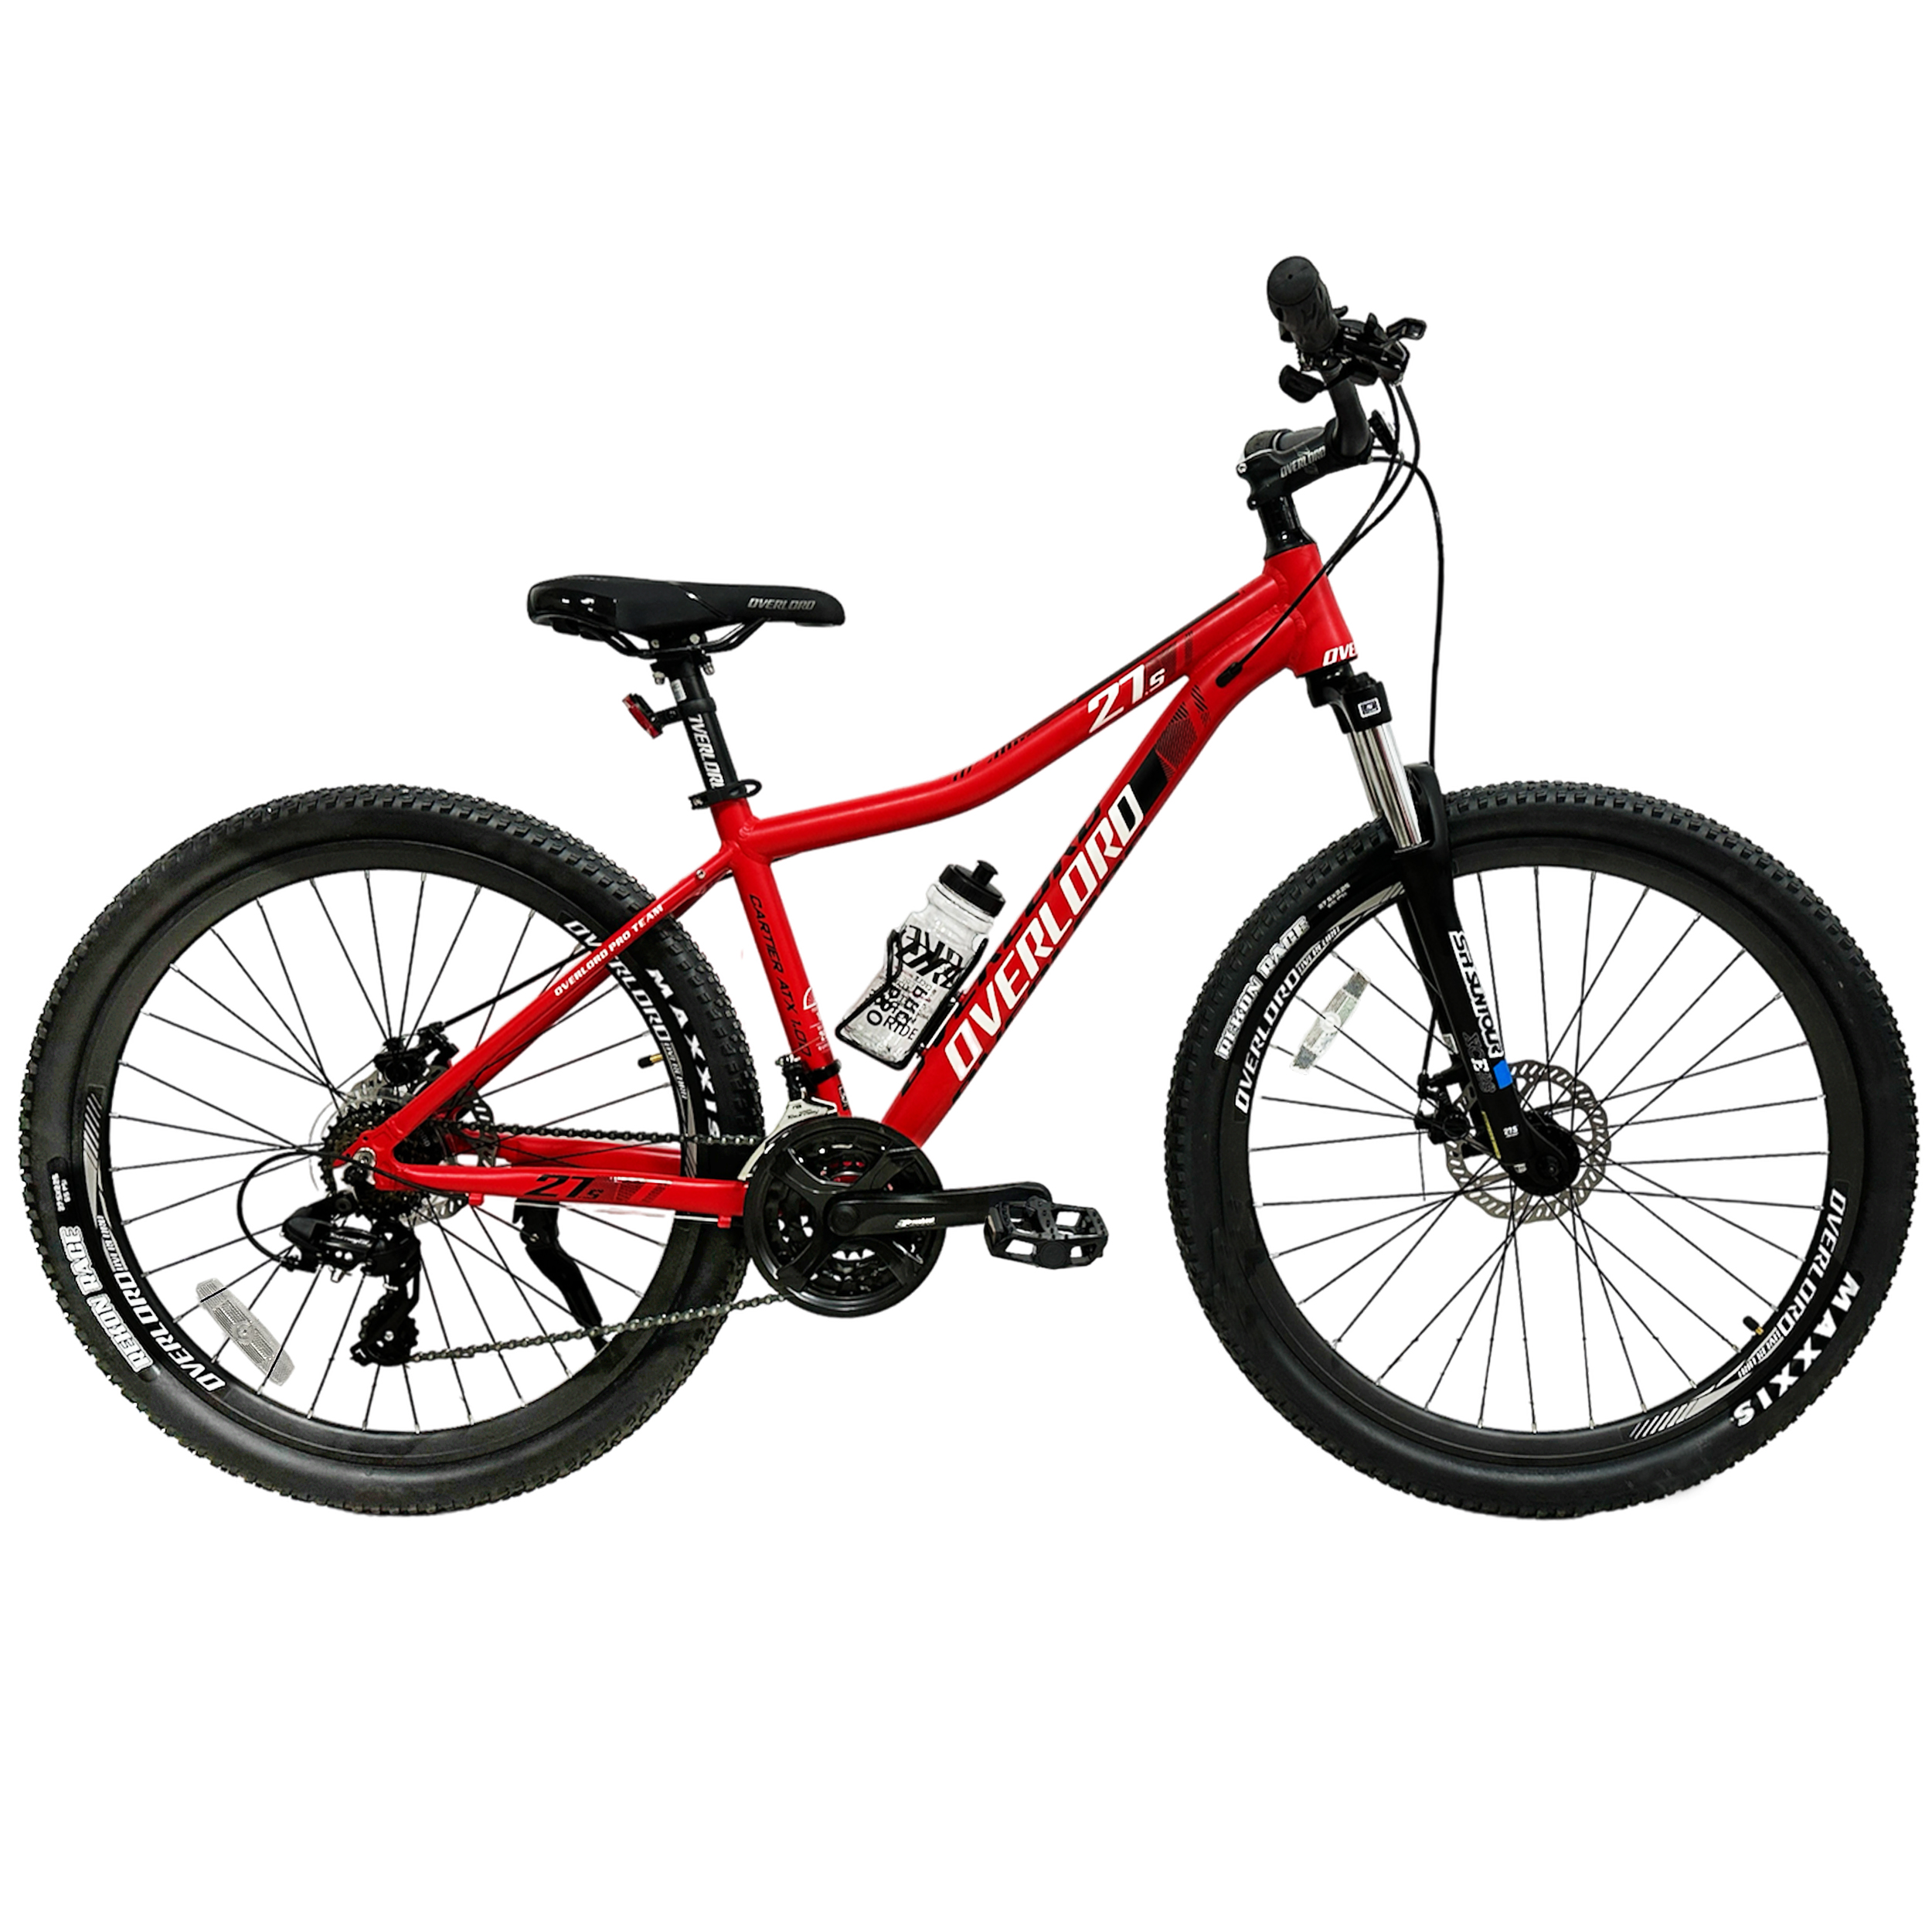 نکته خرید - قیمت روز دوچرخه کوهستان اورلورد مدل CARTIER ATX 1.0D سایز 27.5 خرید